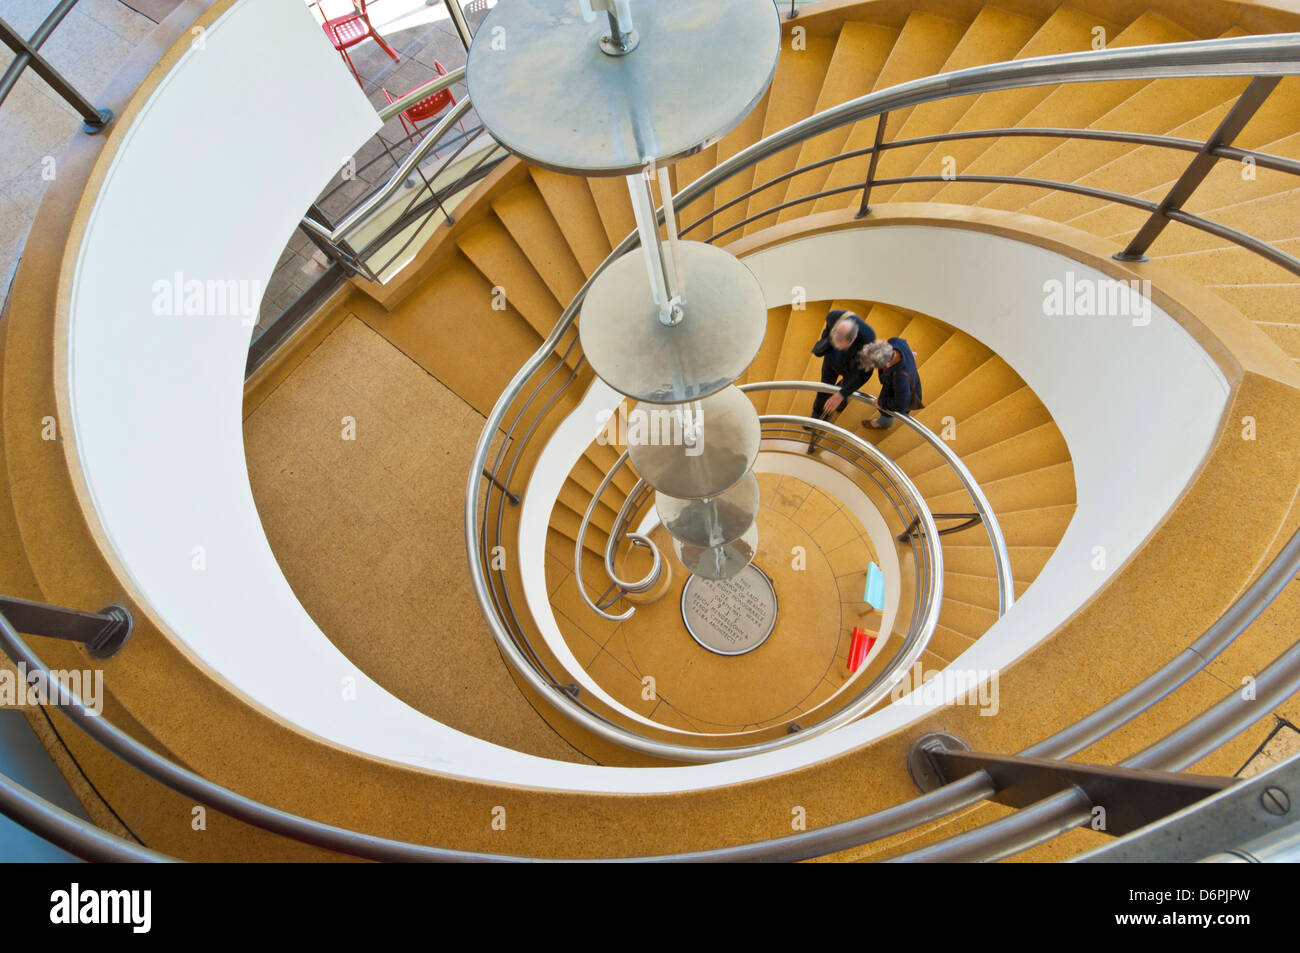 Escalera en espiral en el interior del De La Warr Pavilion, Bexhill on Mar, East Sussex, Inglaterra, Reino Unido, GB, EU, Europa Foto de stock